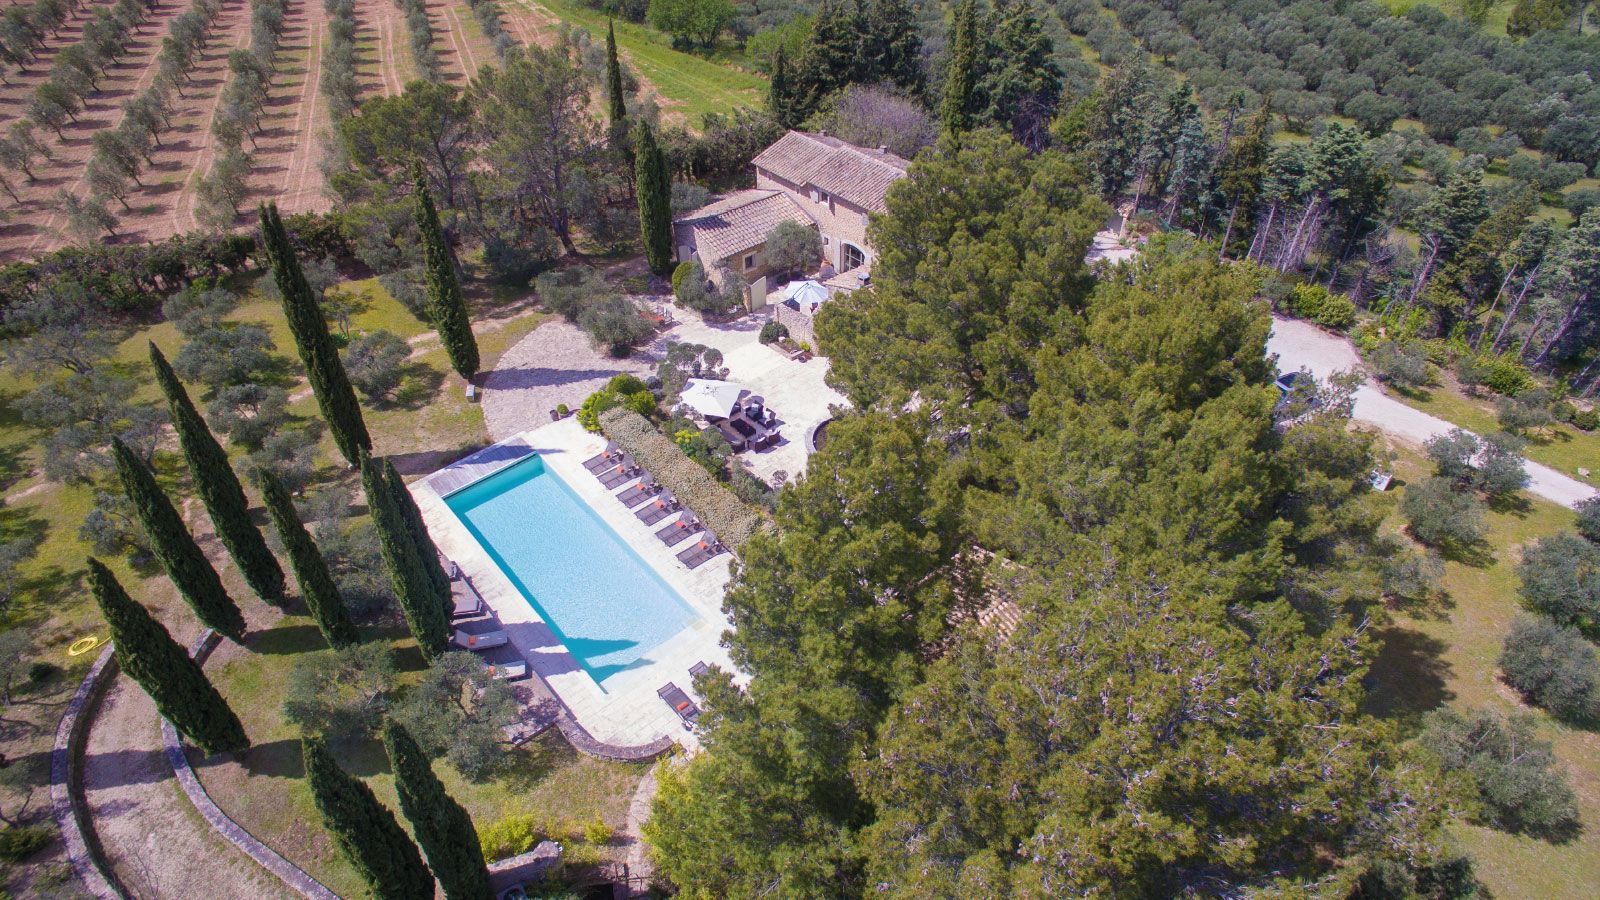 Eygalières luxury holidays villa vacances location